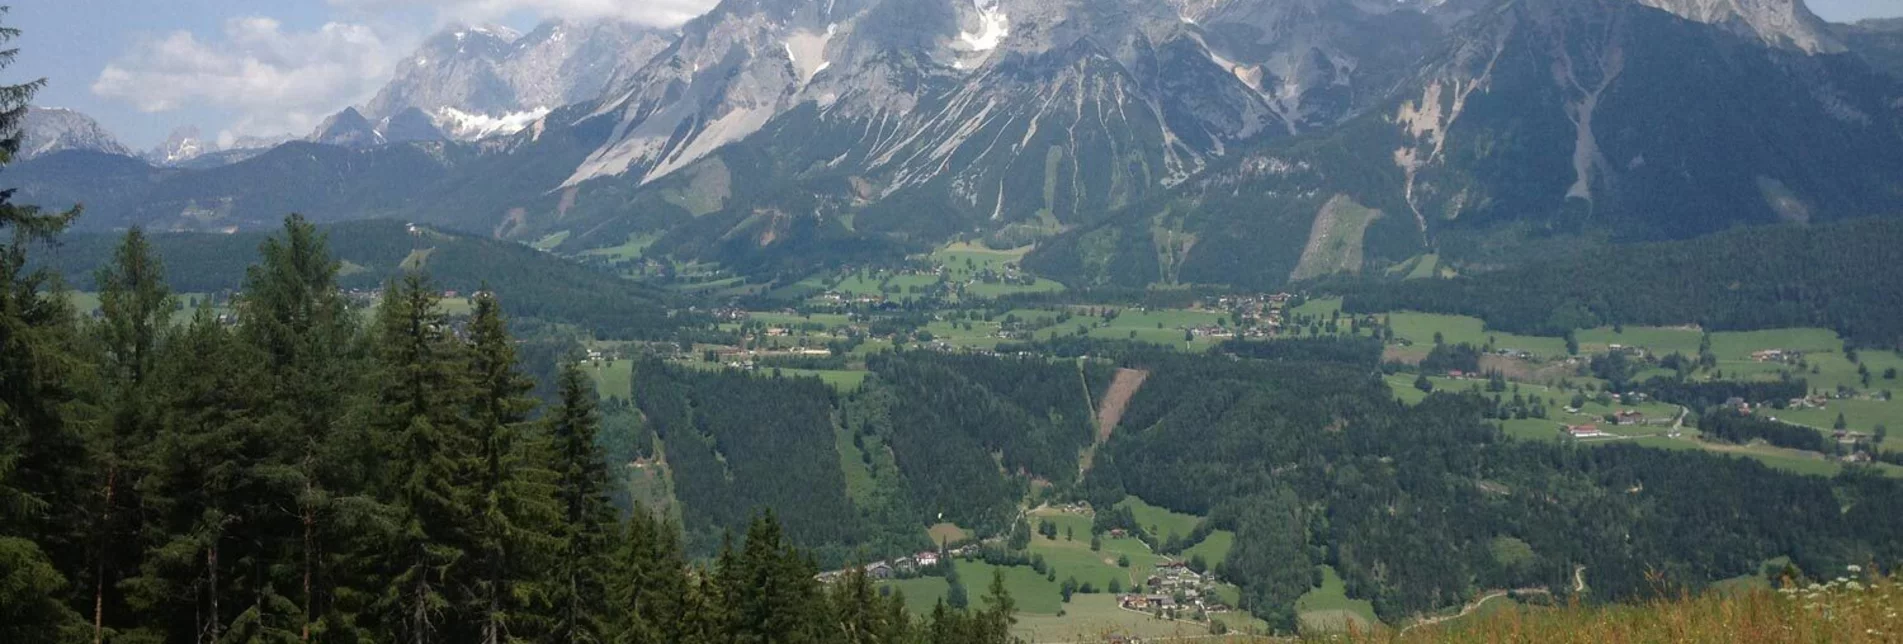 Hiking route Ore Trail - Touren-Impression #1 | © Erlebnisregion Schladming-Dachstein